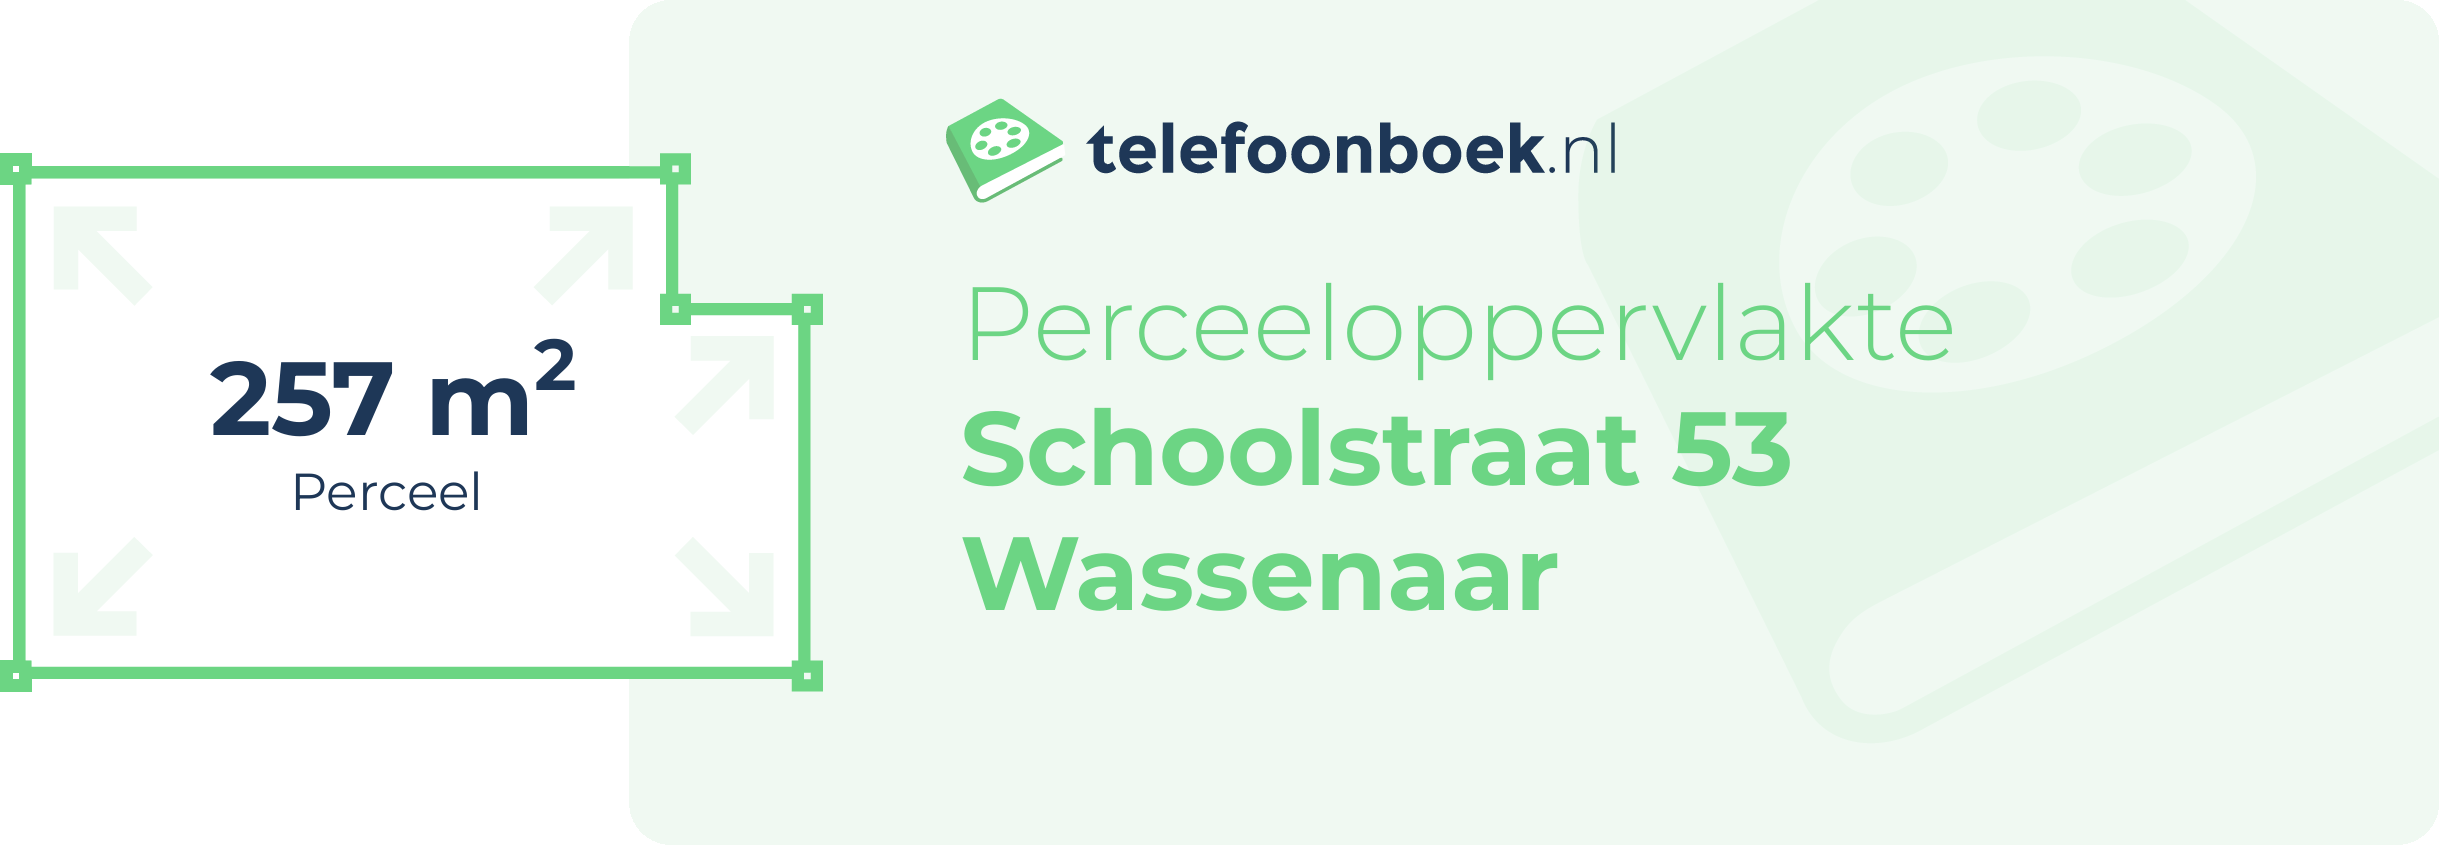 Perceeloppervlakte Schoolstraat 53 Wassenaar